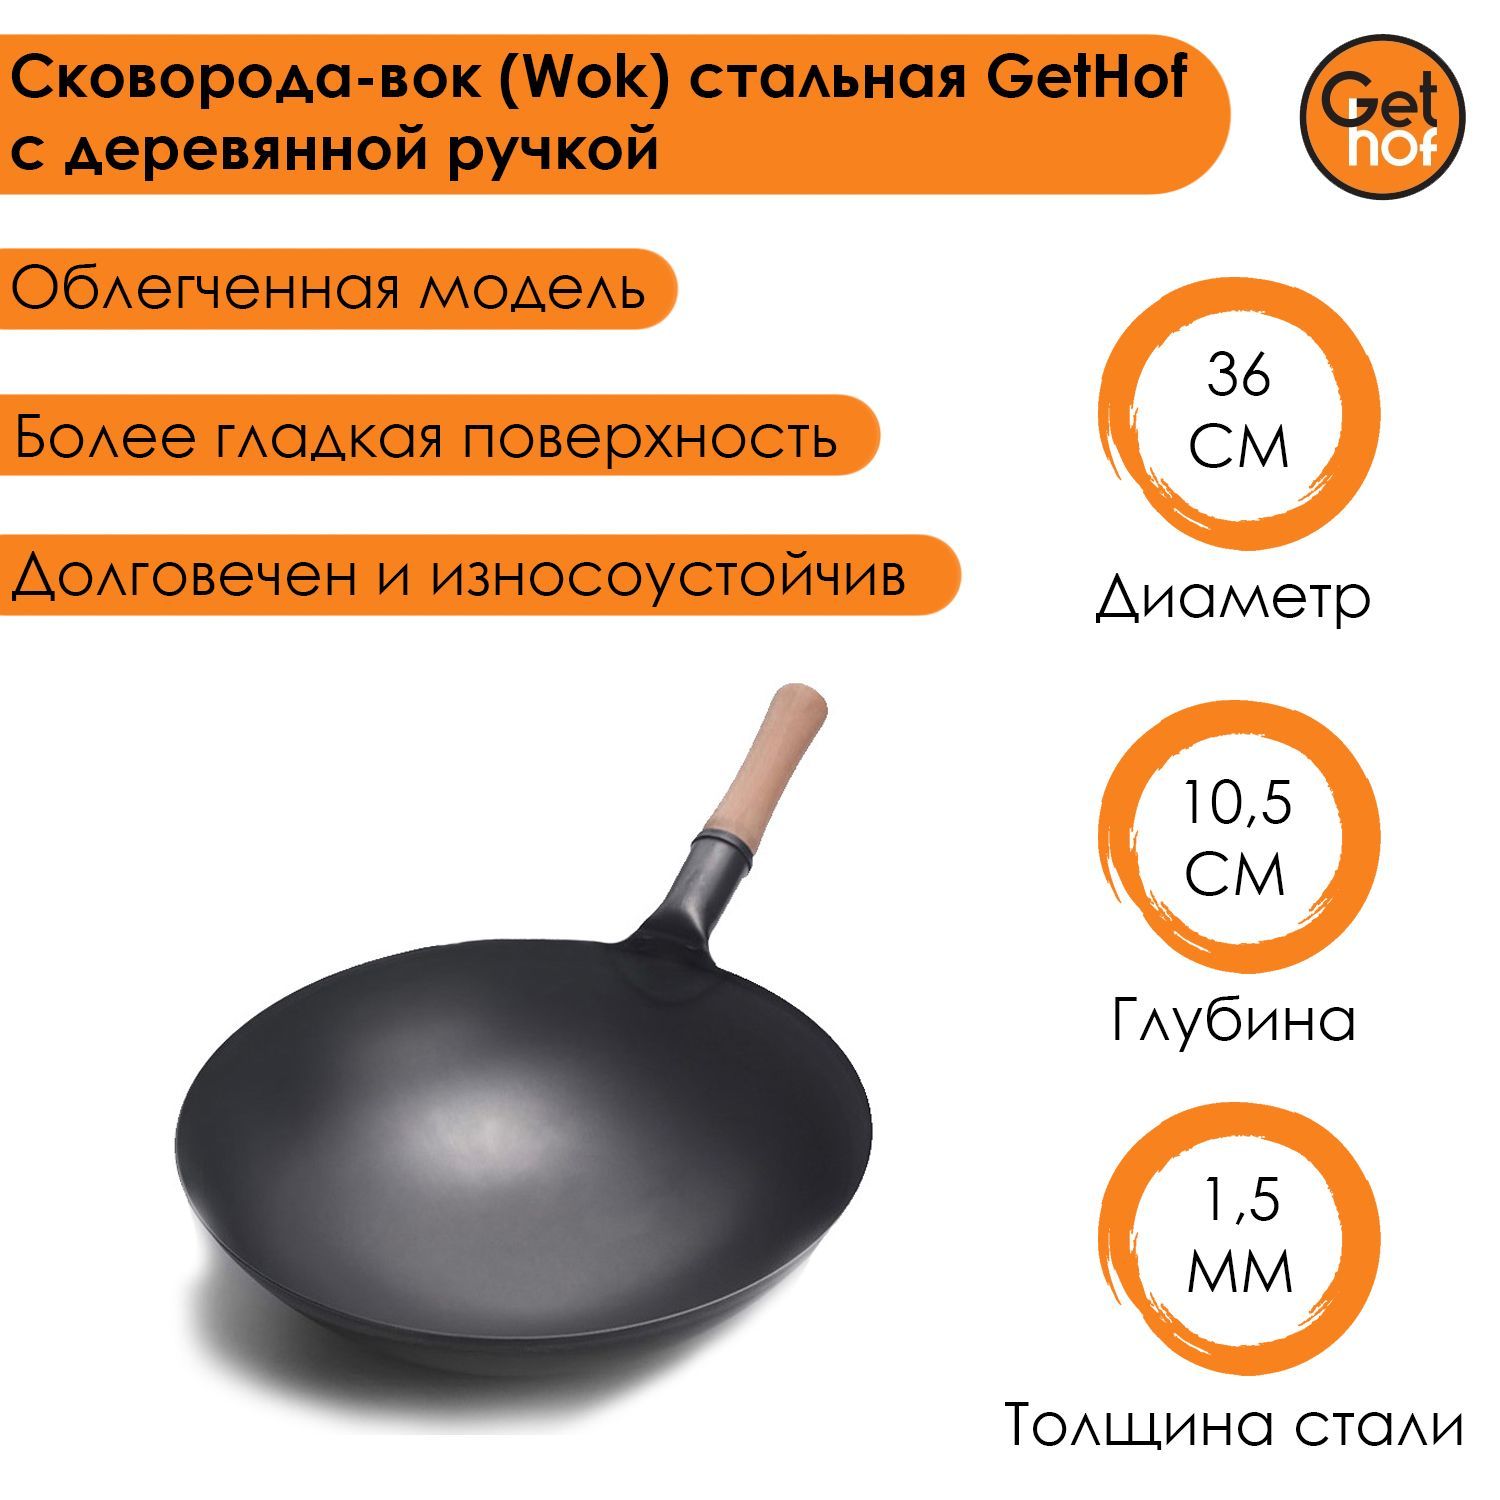 Сковорода-вок (Wok) стальная GetHof Premium с деревянной ручкой 36 см